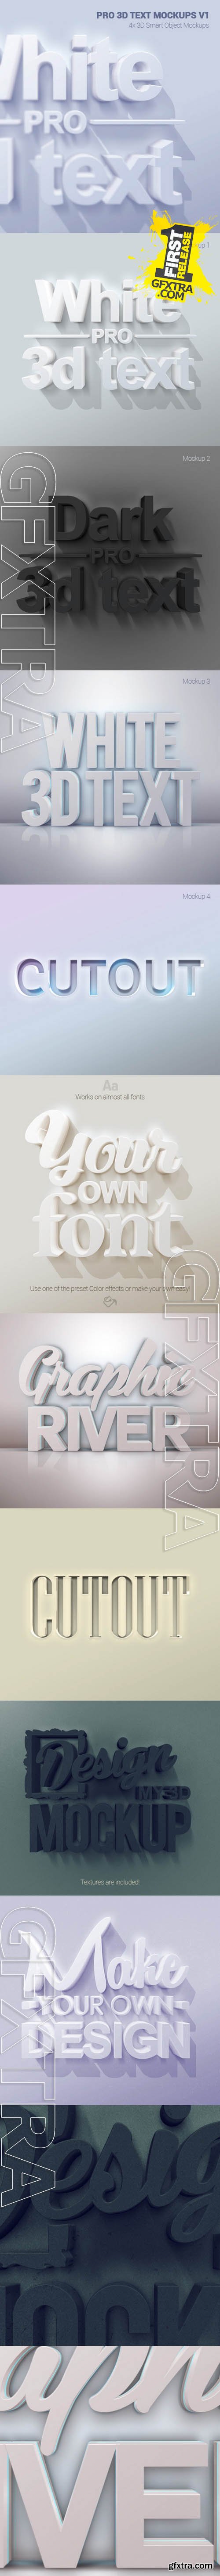 Graphicriver Pro 3D Text Mockups V1 10911811